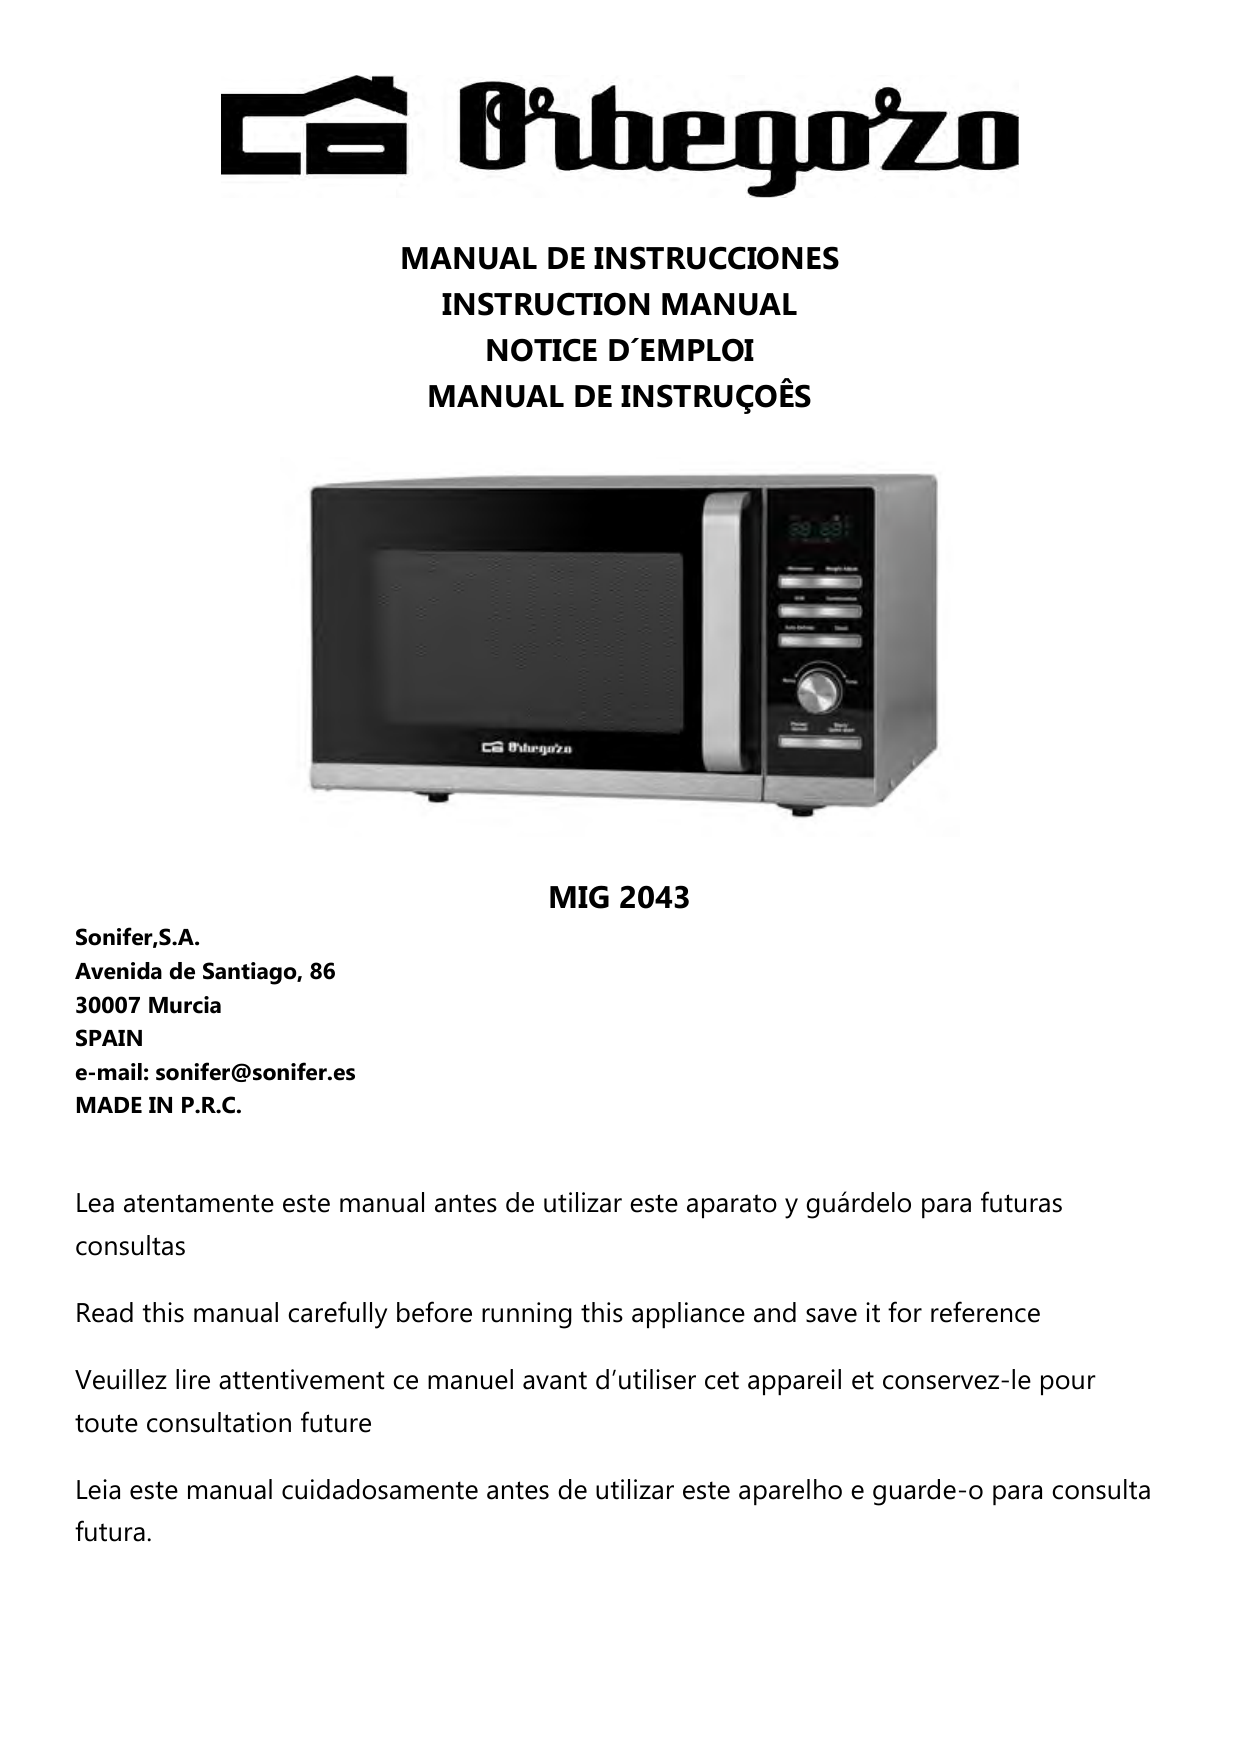 Manual de Instrucciones Microondas Orbegozo MIG 2320 con Grill